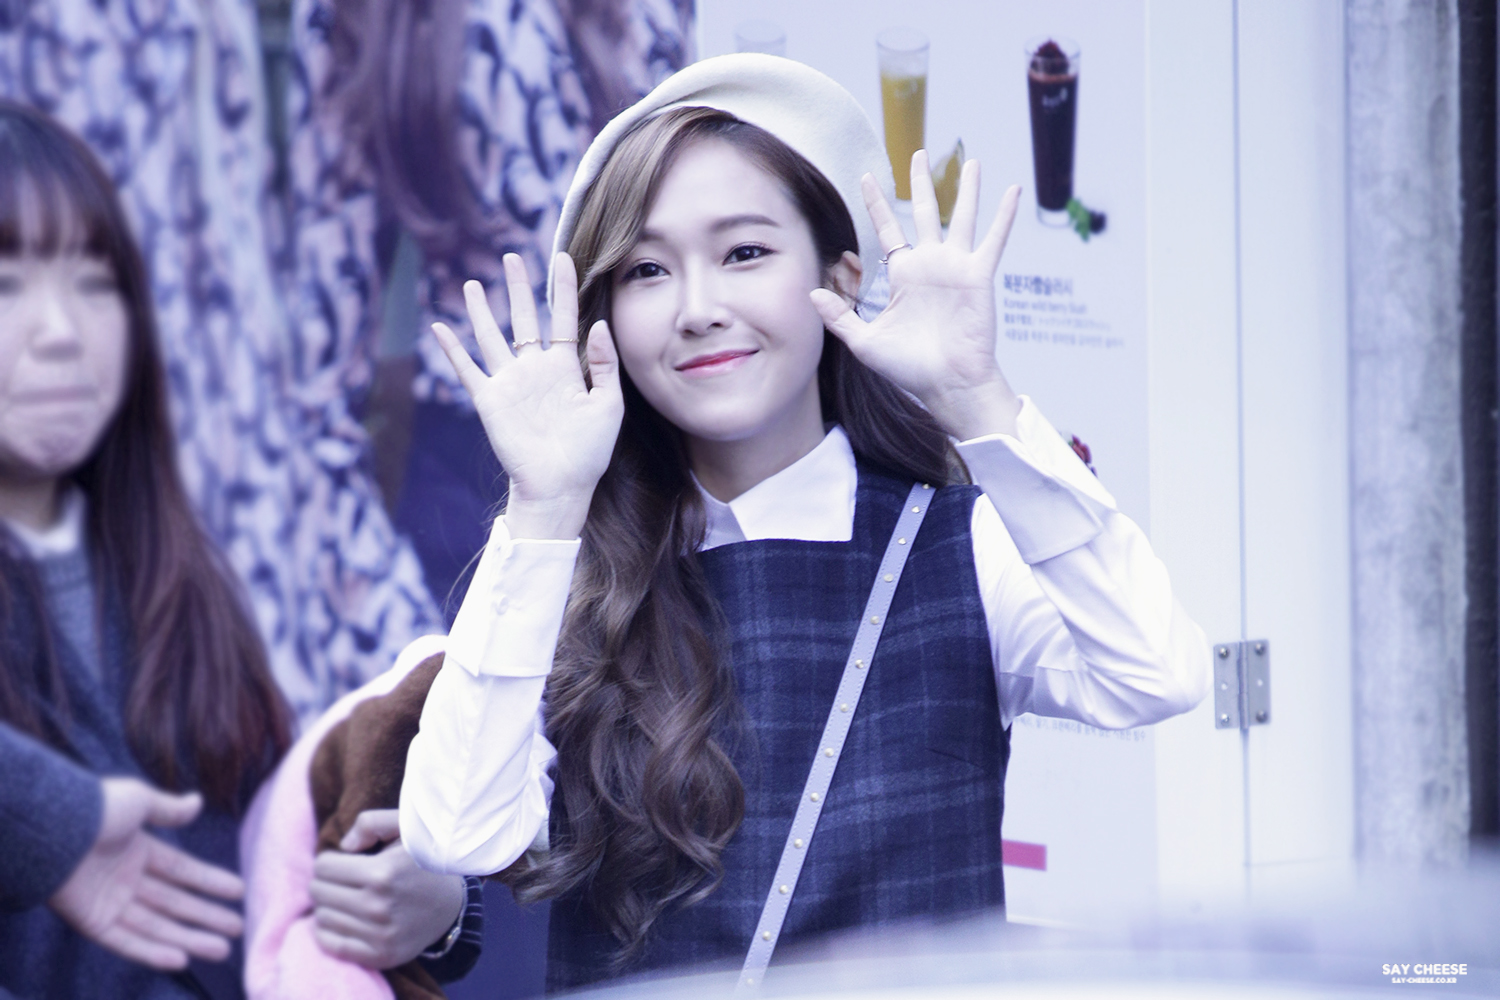 [PIC][06-12-2014]Jessica tham dự buổi fansign cho thương hiệu "Lapalette" vào trưa nay 23920466691_05c4610171_o